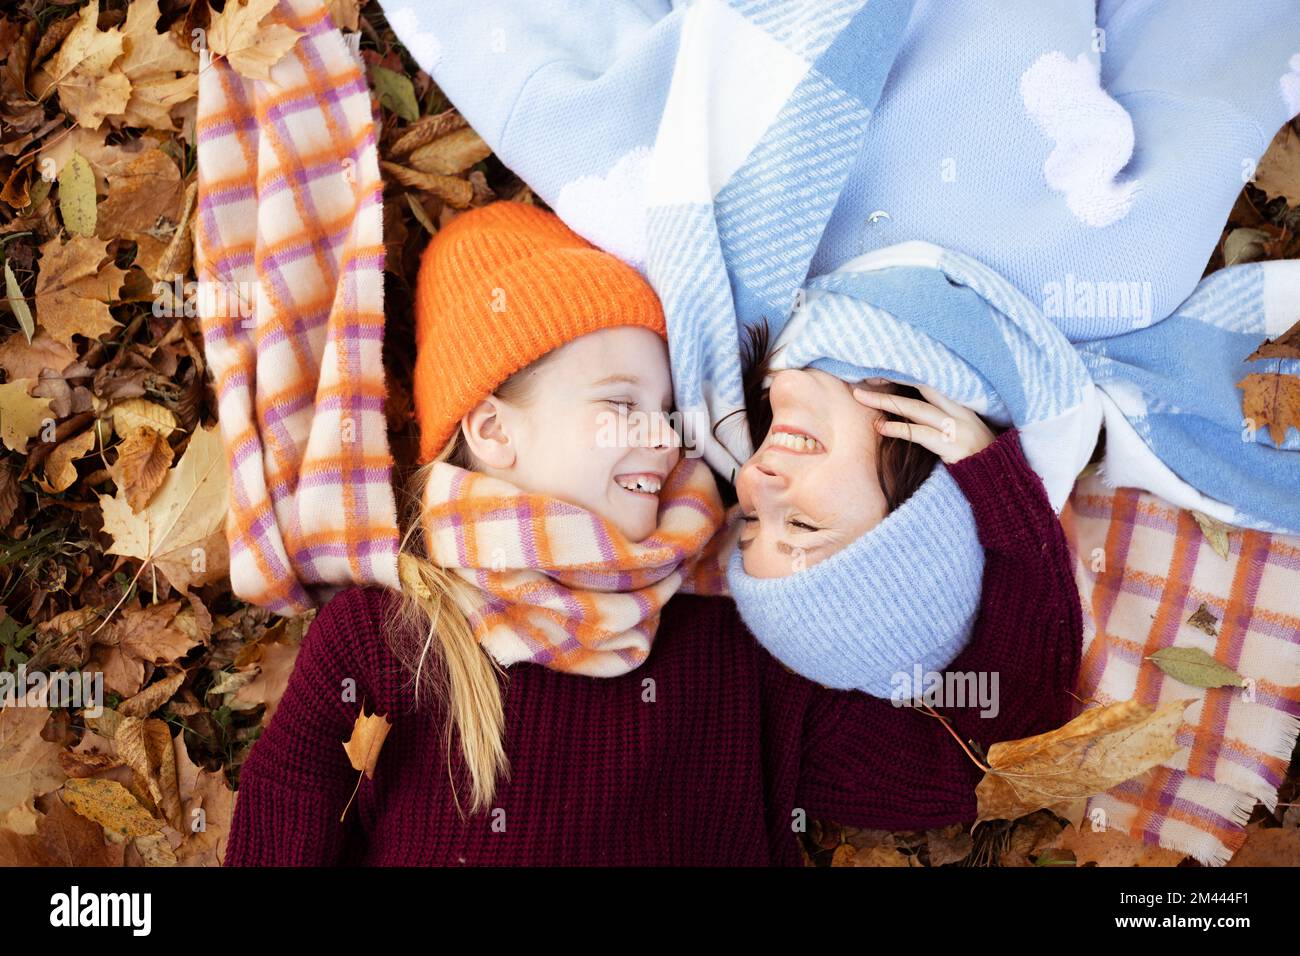 Eine lächelnde, süße Frau und ein kleines Mädchen in warmen Kleidern, die sich anschauen, während sie im Wald oder Park auf Laub liegen Stockfoto